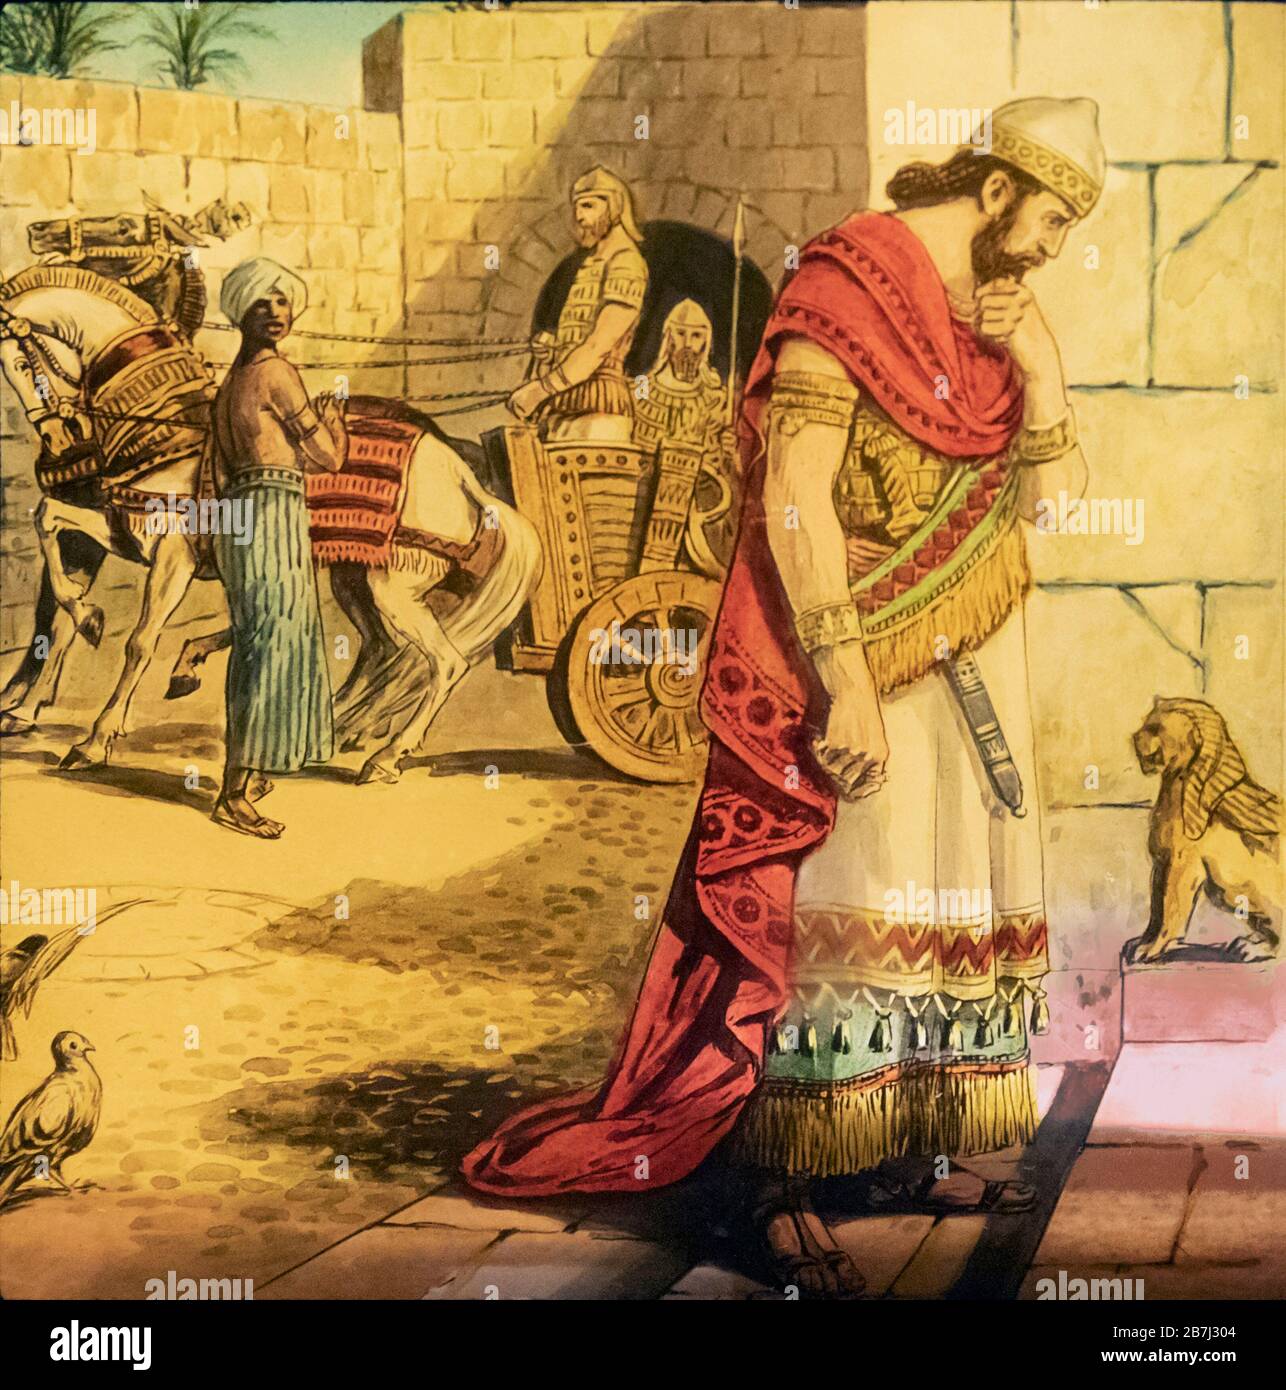 Nebukadnezar II, c 605 v. Chr. - ca. 562 V. CHR. König des neubabylonischen Kaiserreichs. Hier wird er als hinunterblickend von seinem Palast über seine Hauptstadt Babylon gedacht. Aus einem Laternenschlitten aus dem 19. Jahrhundert. Stockfoto